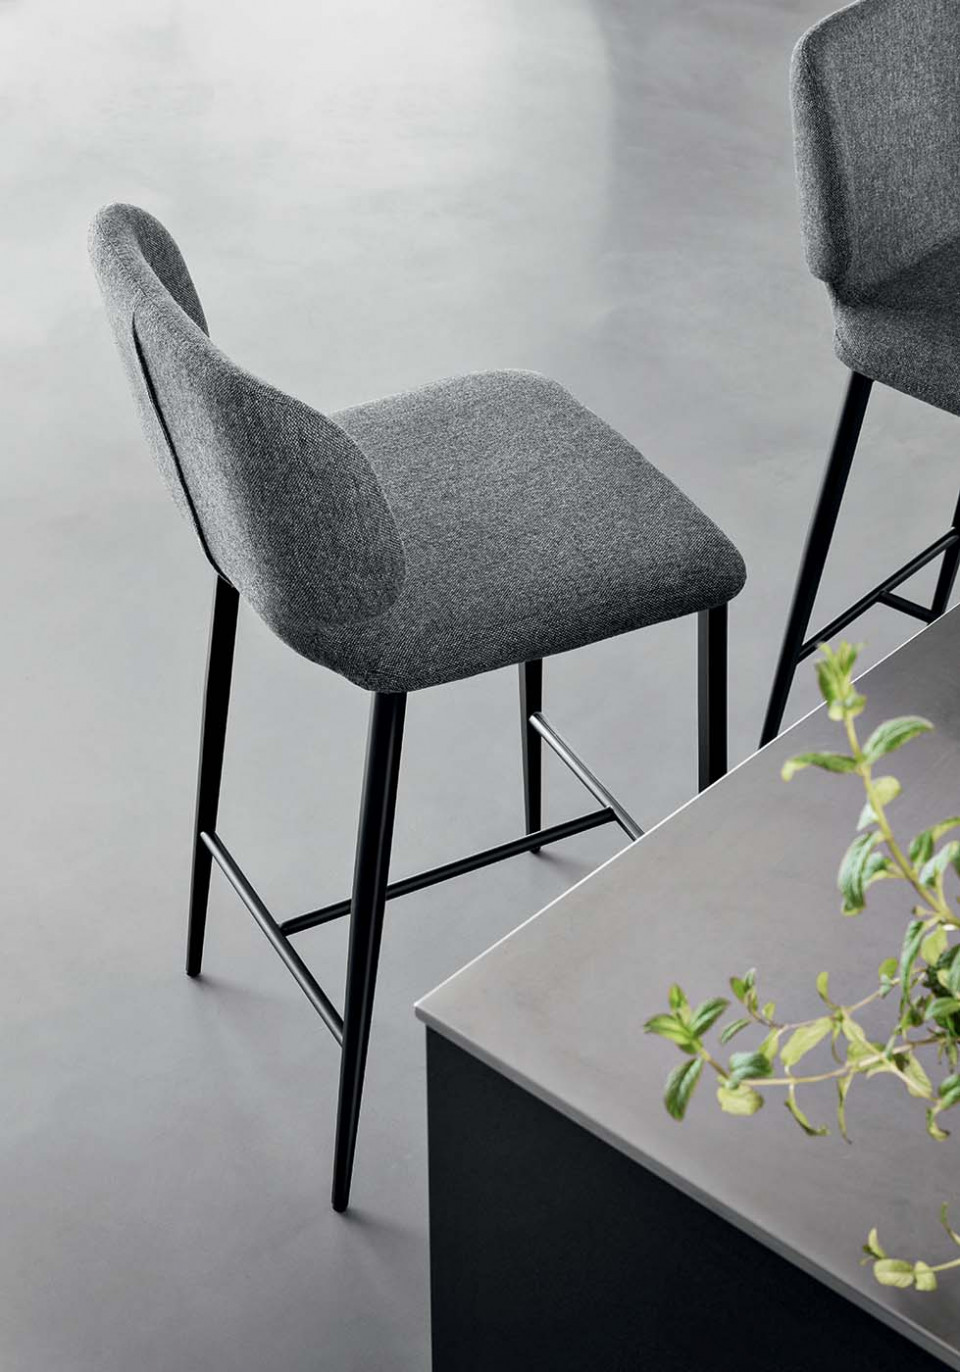 Wrap stool in grey fabric